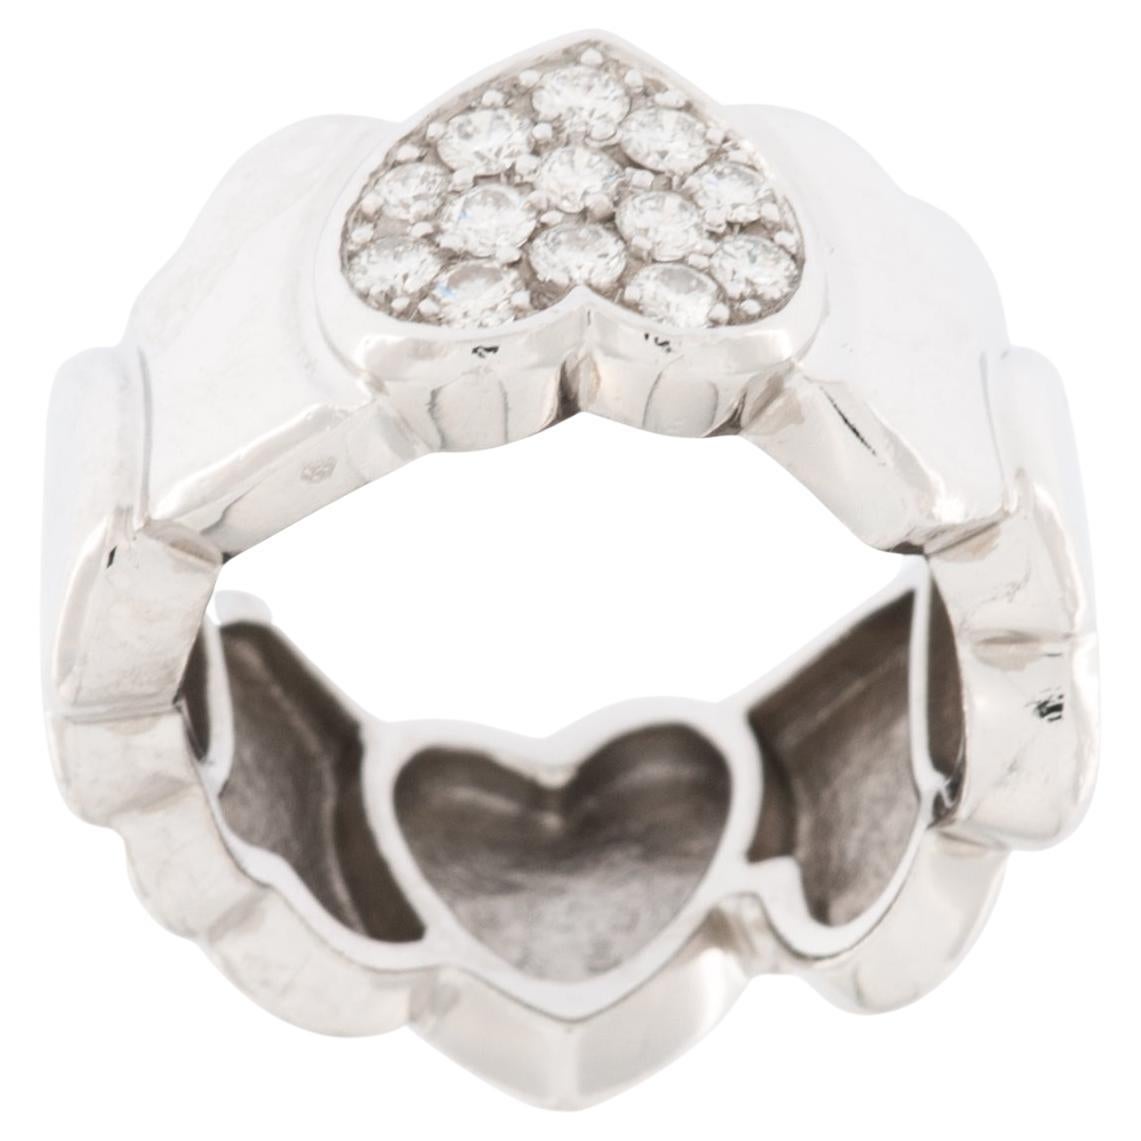 FRED PARIS Heart Diamond Ring 18kt White Gold